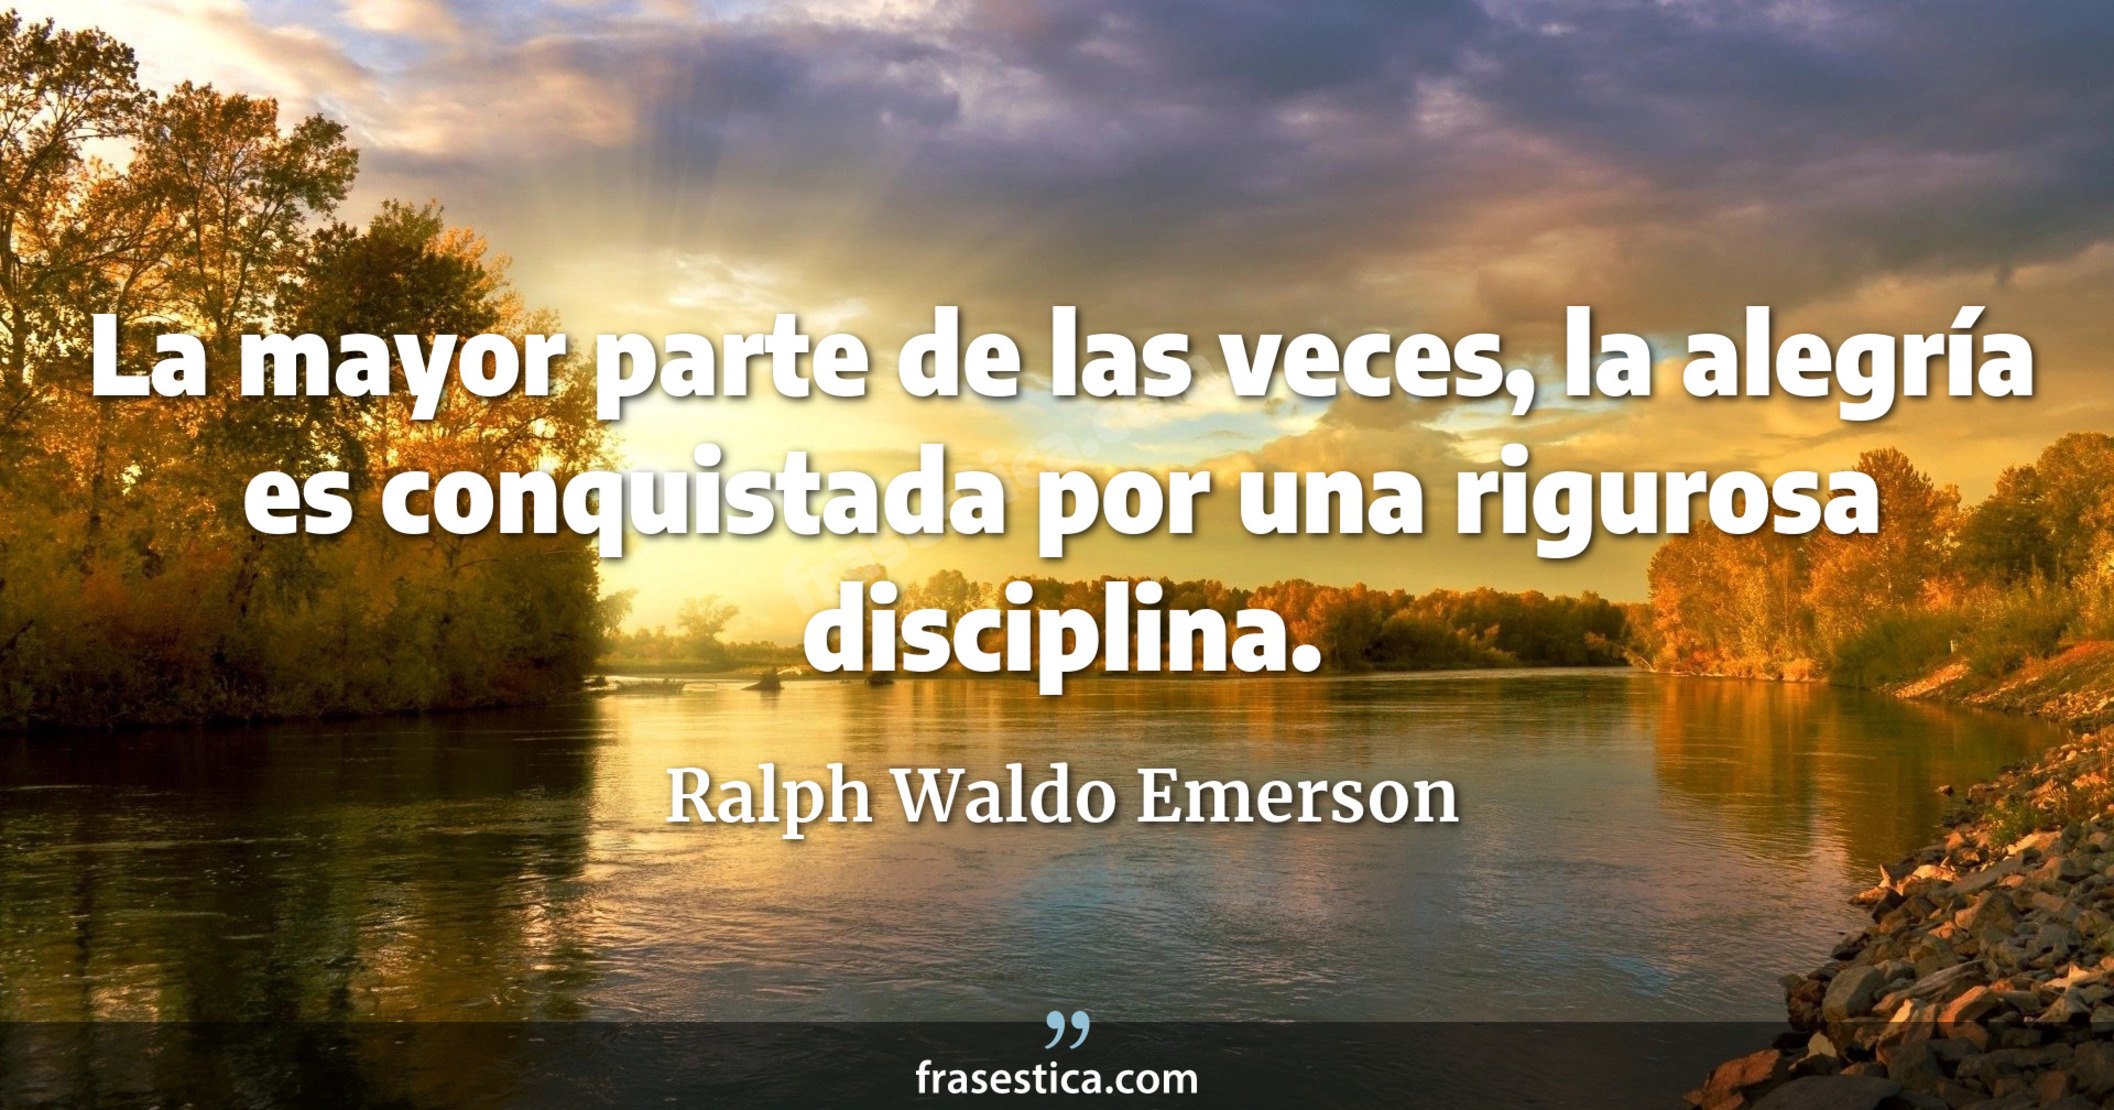 La mayor parte de las veces, la alegría es conquistada por una rigurosa disciplina. - Ralph Waldo Emerson